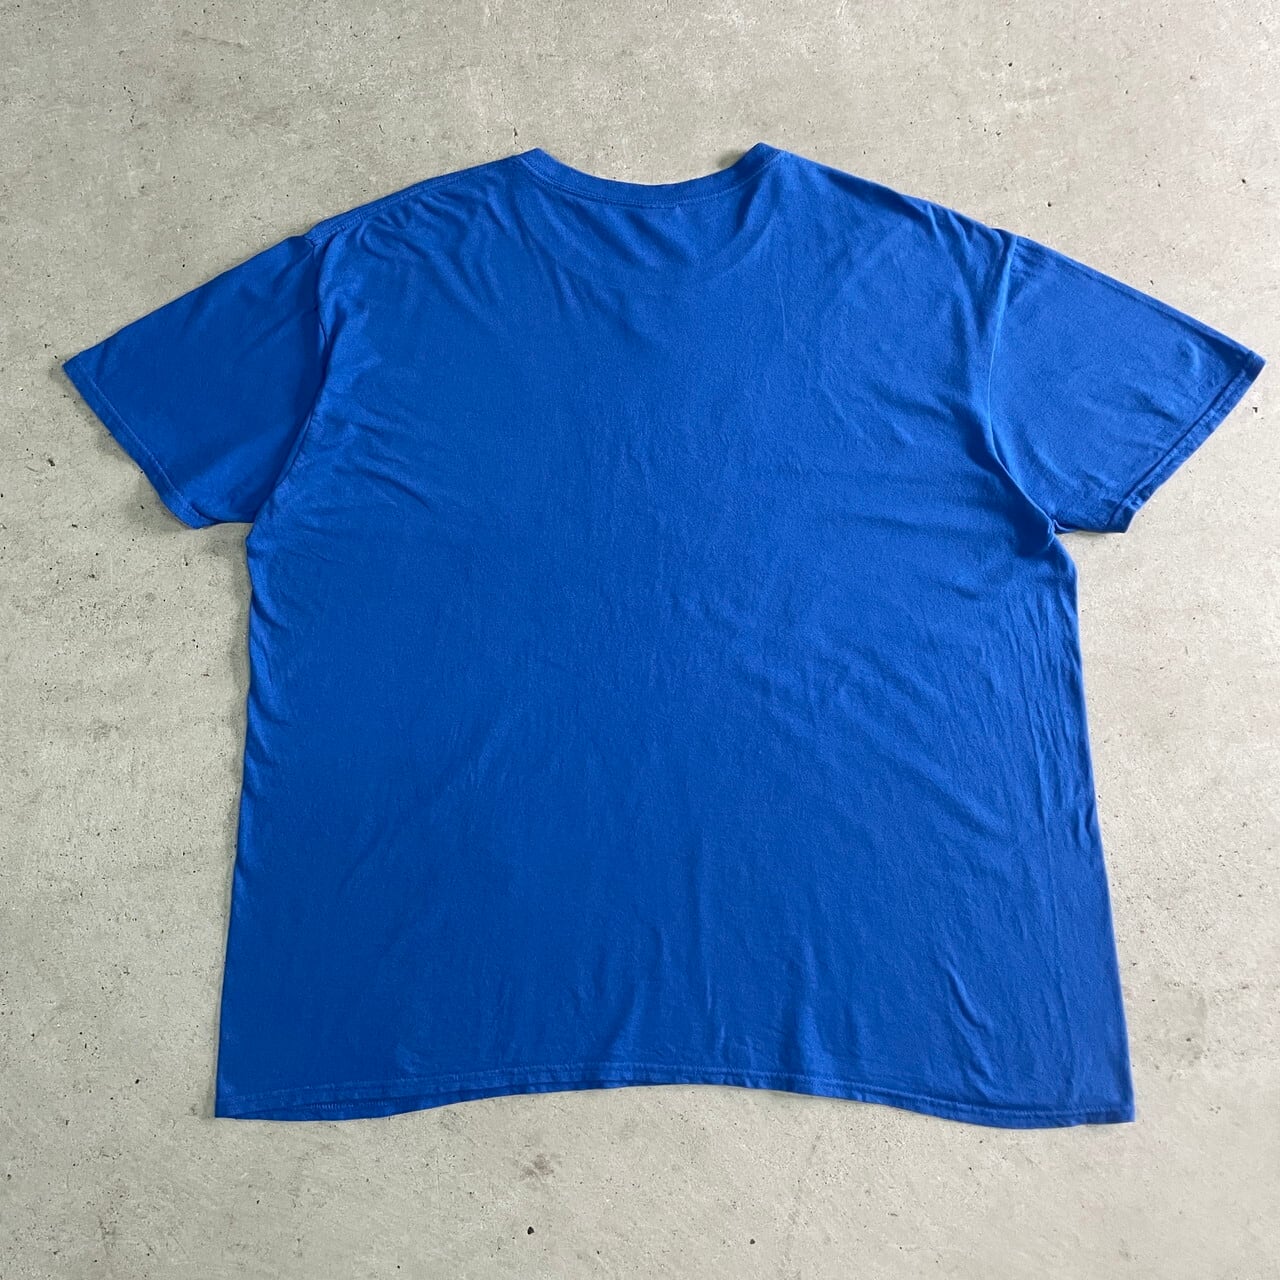 ビッグサイズ Microsoft IT企業ロゴ アドバタイジングTシャツ メンズ2XL 古着 マイクロソフト ブルー 青色 大きいサイズ【T